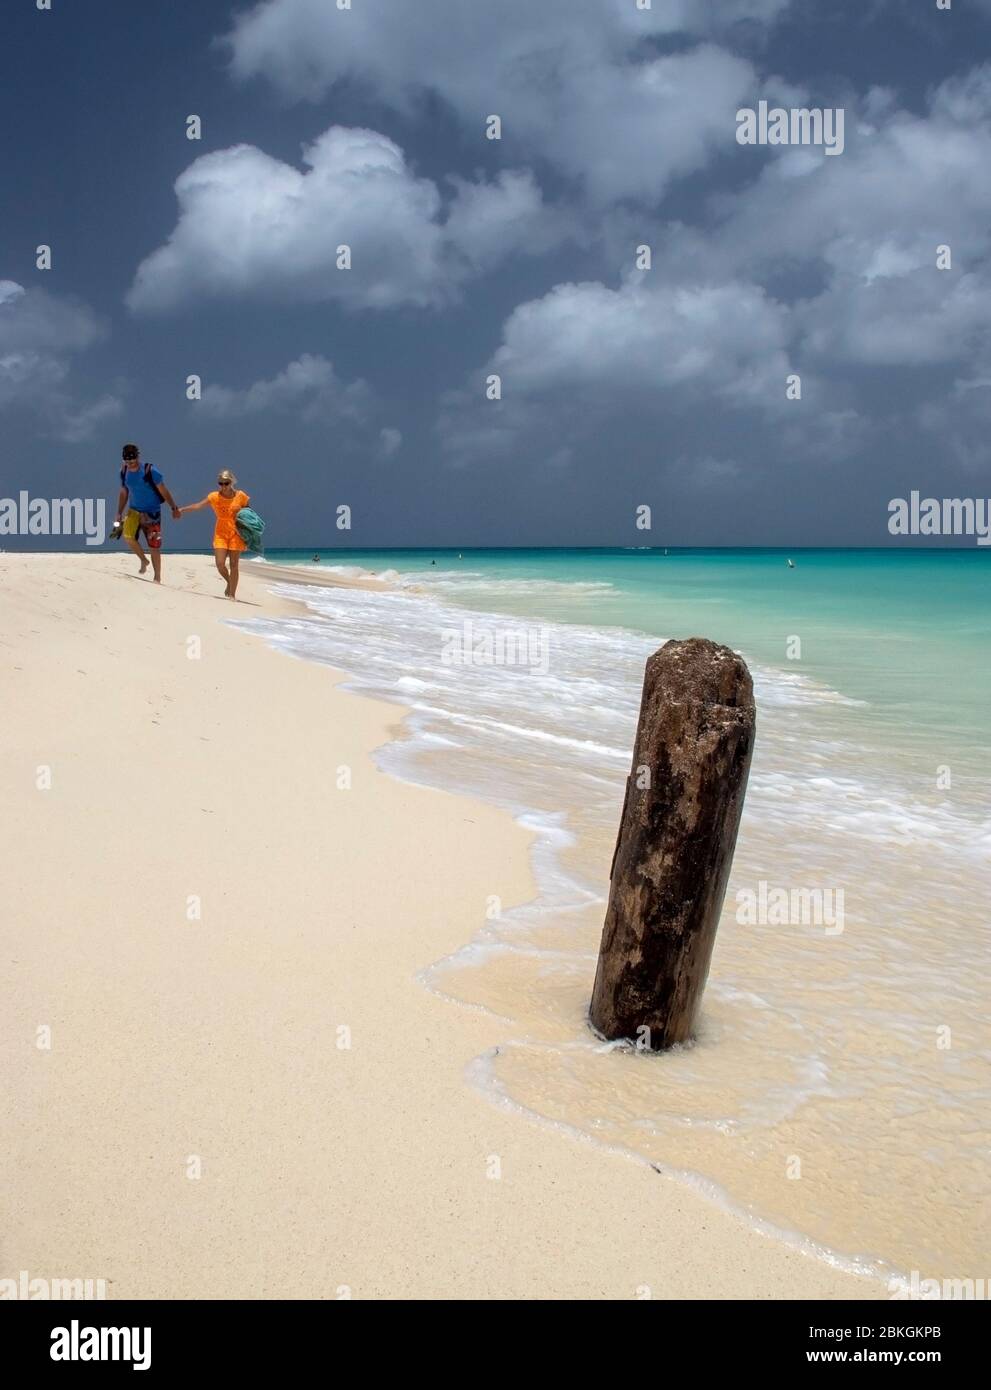 Deux personnes marchant main dans la main le long d'une plage d'Eagle. Aruba, Antilles néerlandaises, Caraïbes Banque D'Images